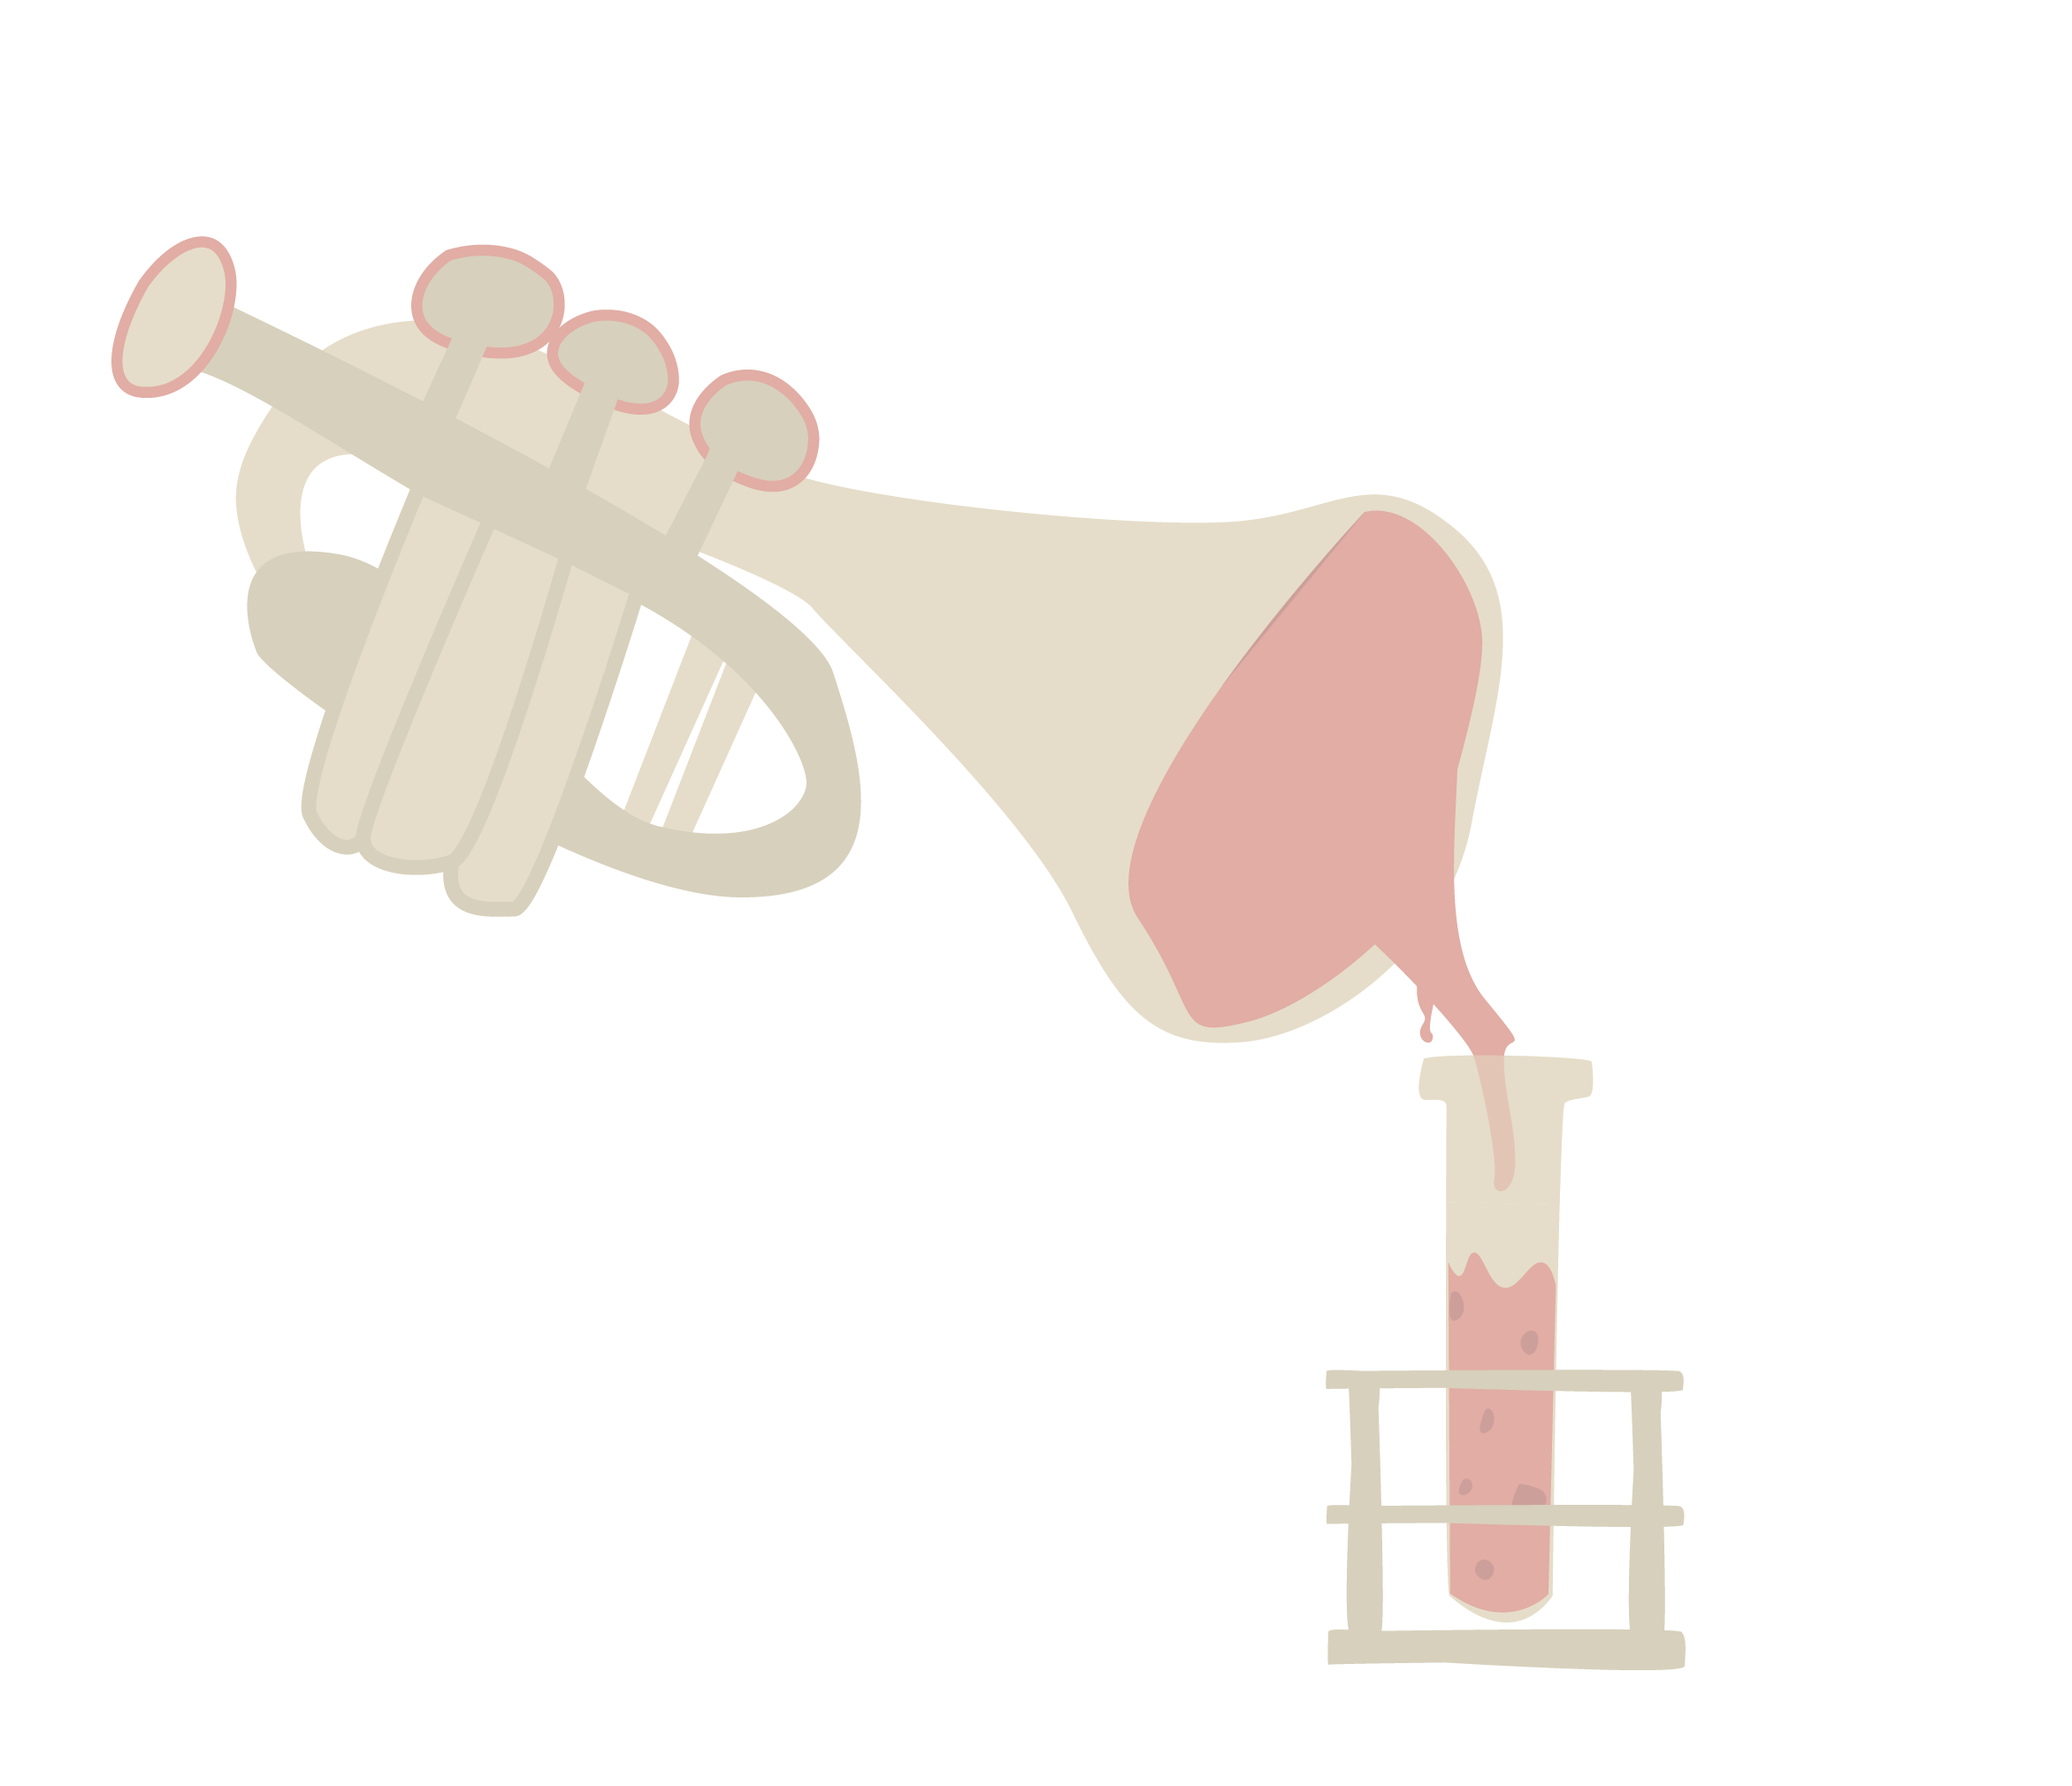 En trompet som hælder en væske over i et reagensglas som et symbol på sammenhængen mellem kultur og sundhed